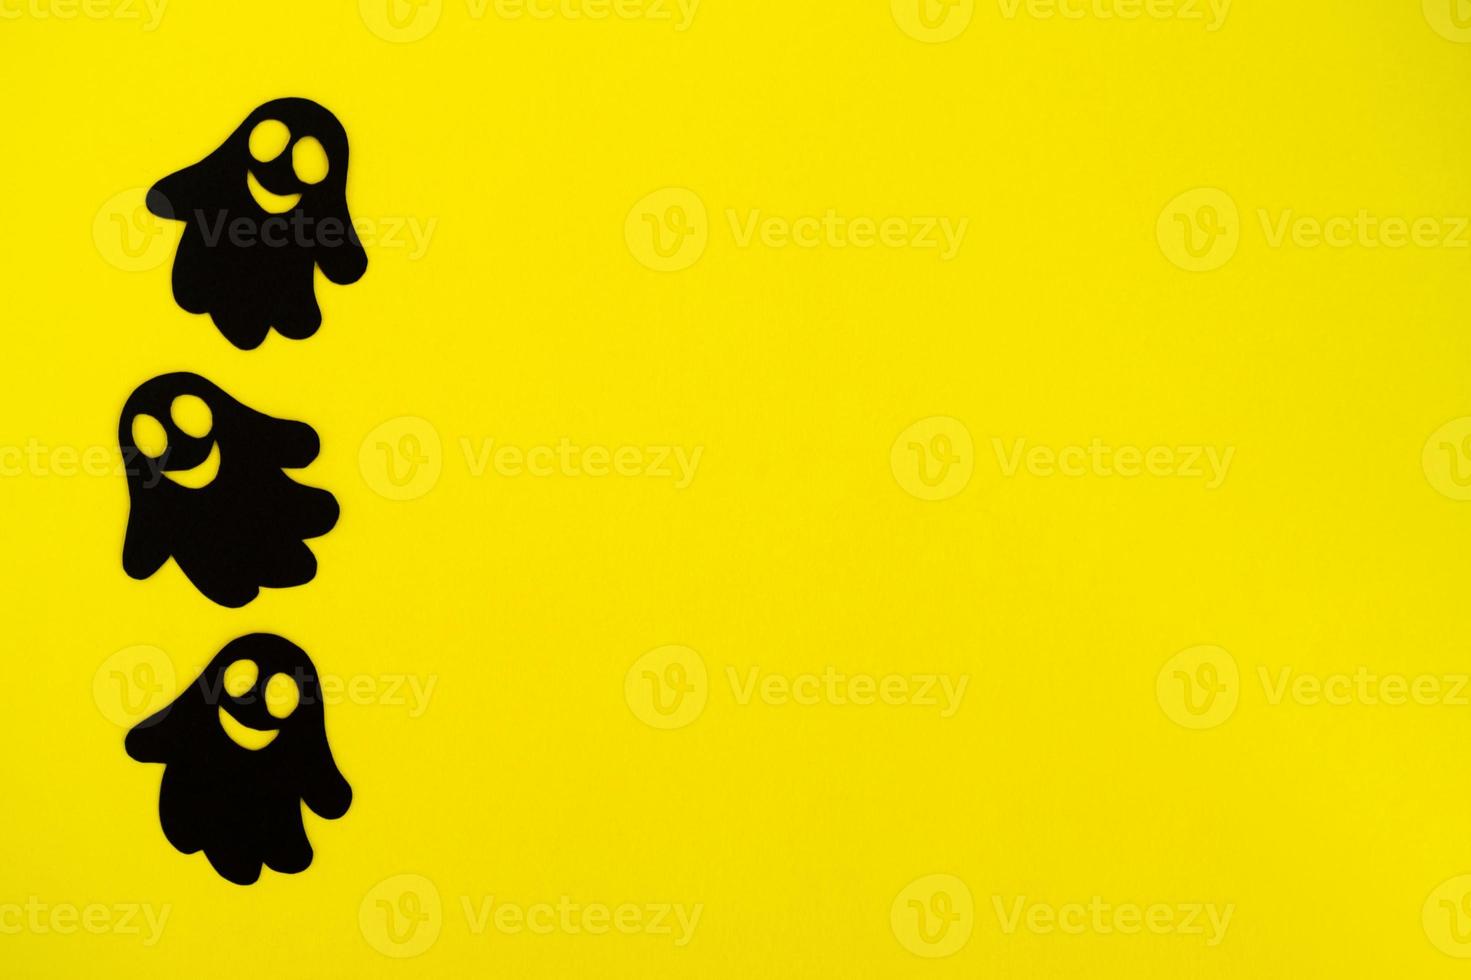 decoraciones navideñas para halloween. tres fantasmas de papel negro sobre un fondo amarillo, vista superior. foto